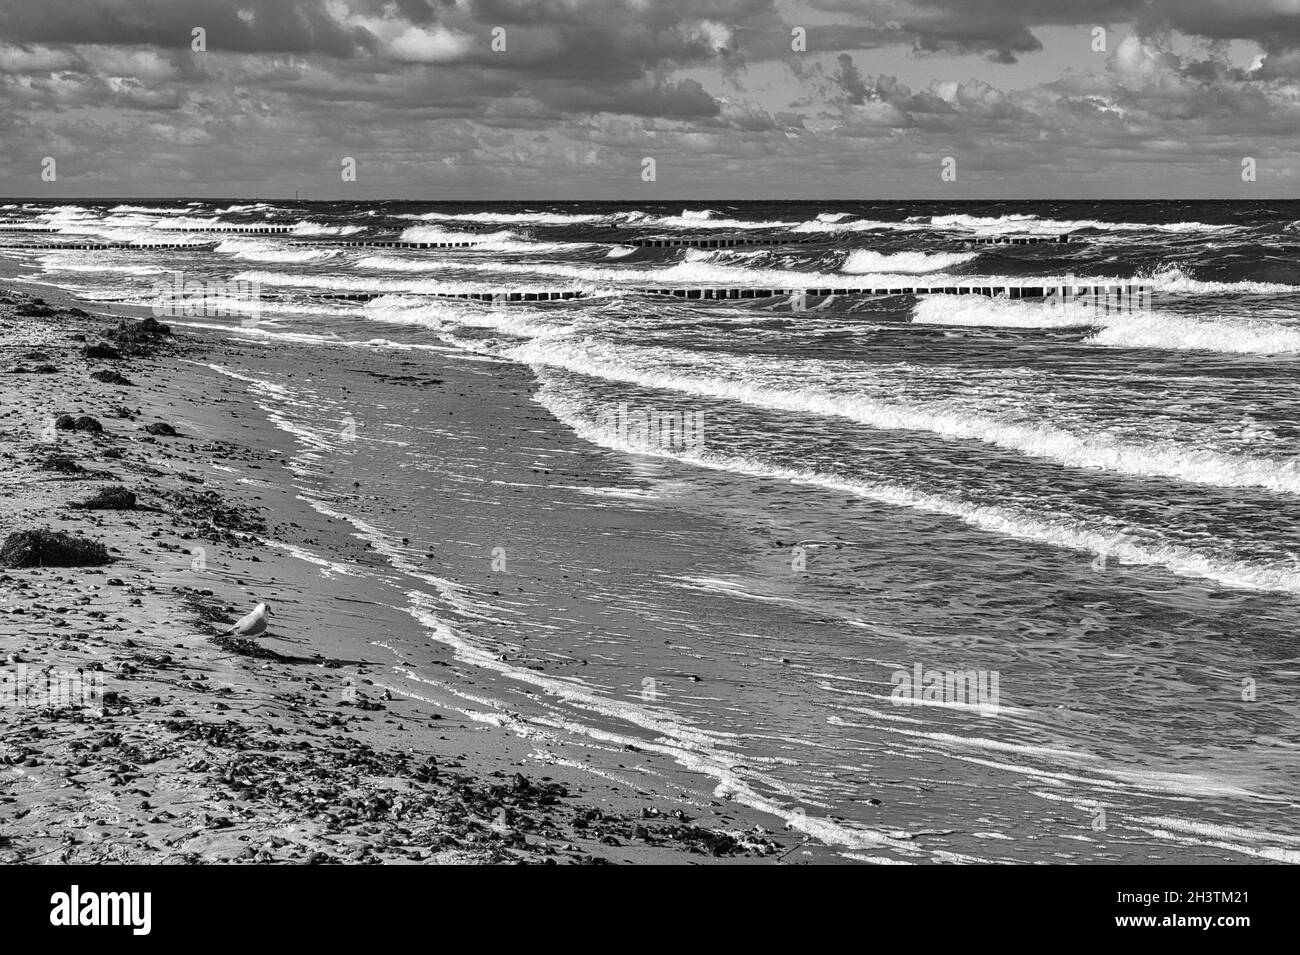 sur la plage de la mer baltique avec des nuages, des dunes, la plage et celle en noir et blanc. loisirs en vacances Banque D'Images